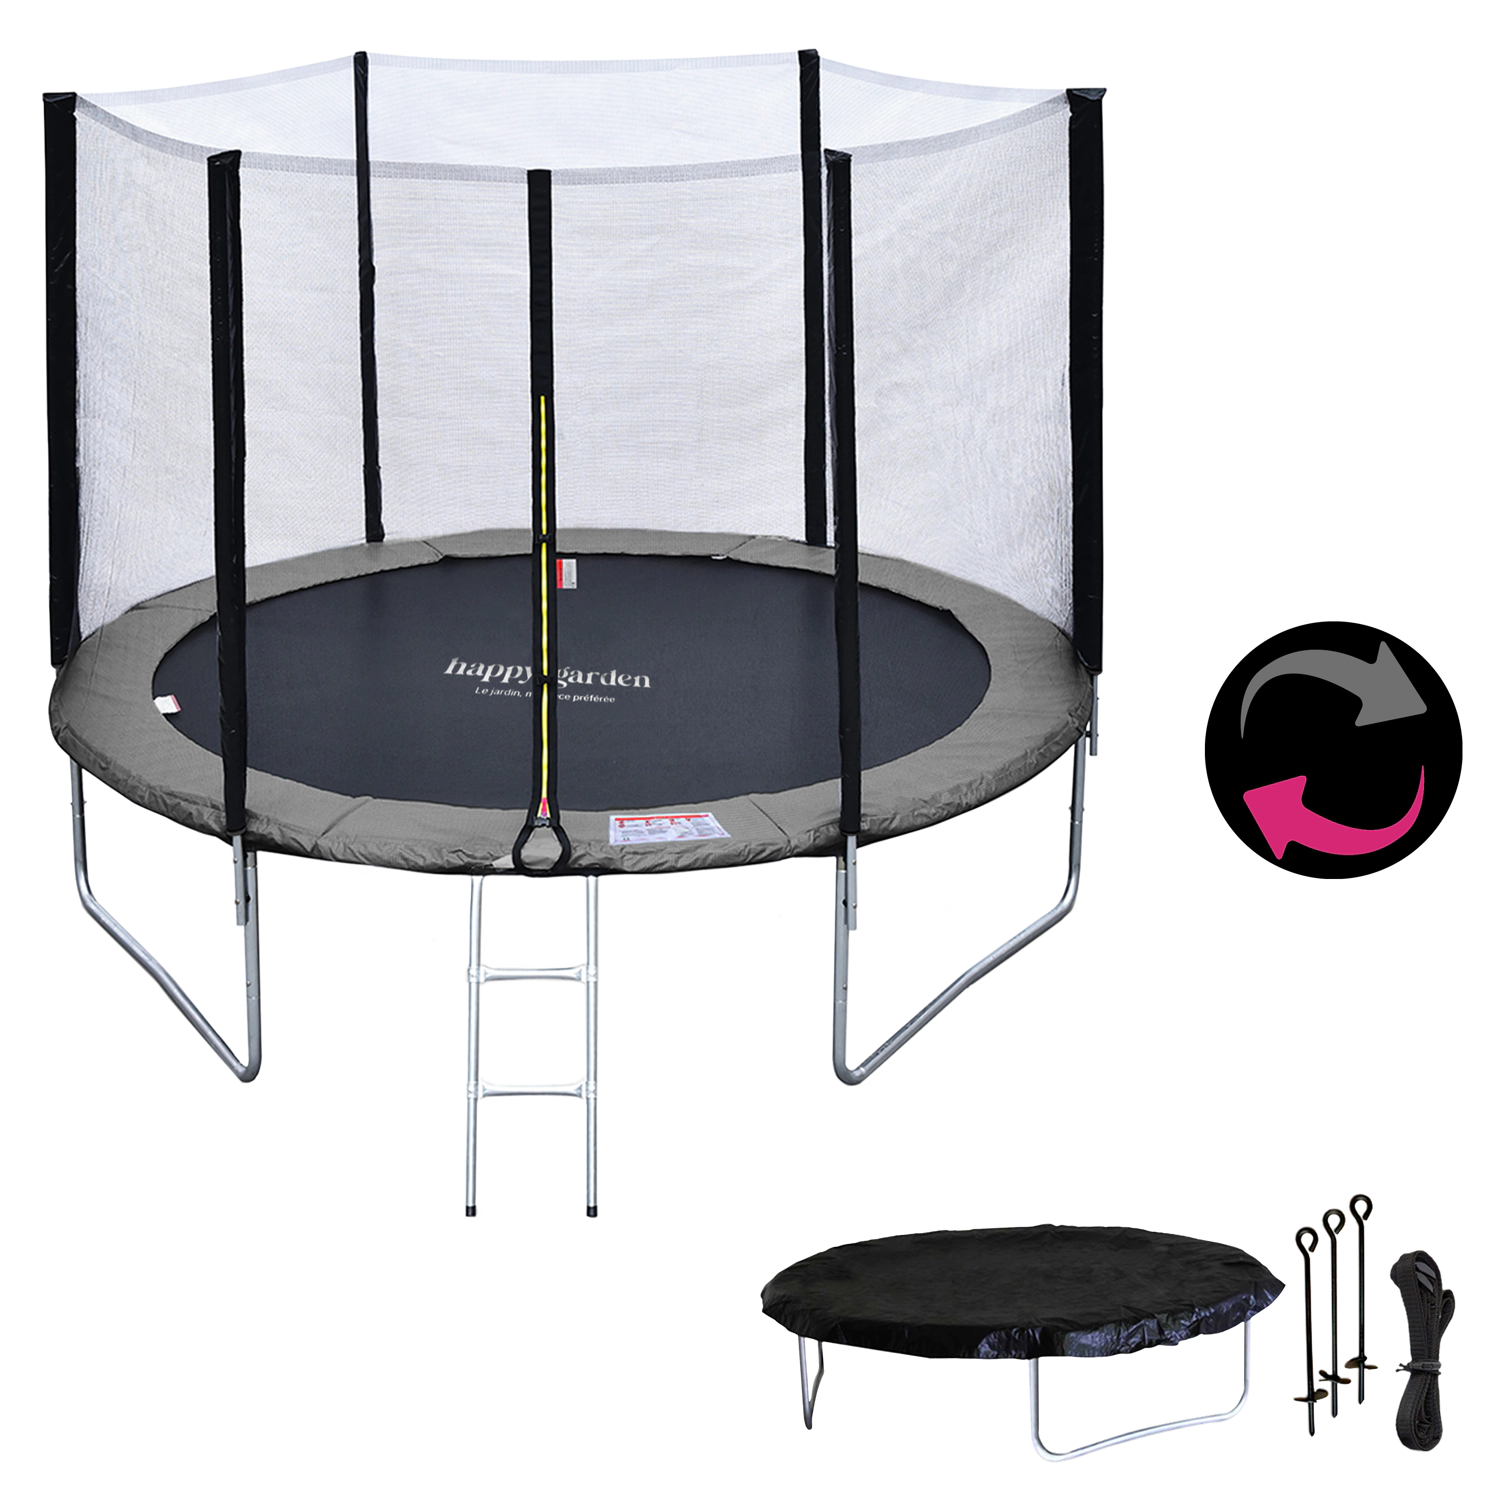 Premium Pack Trampolin 305cm wendbar grau / rosa ADELAÏDE + Netz, Leiter, Plane und Verankerungsset